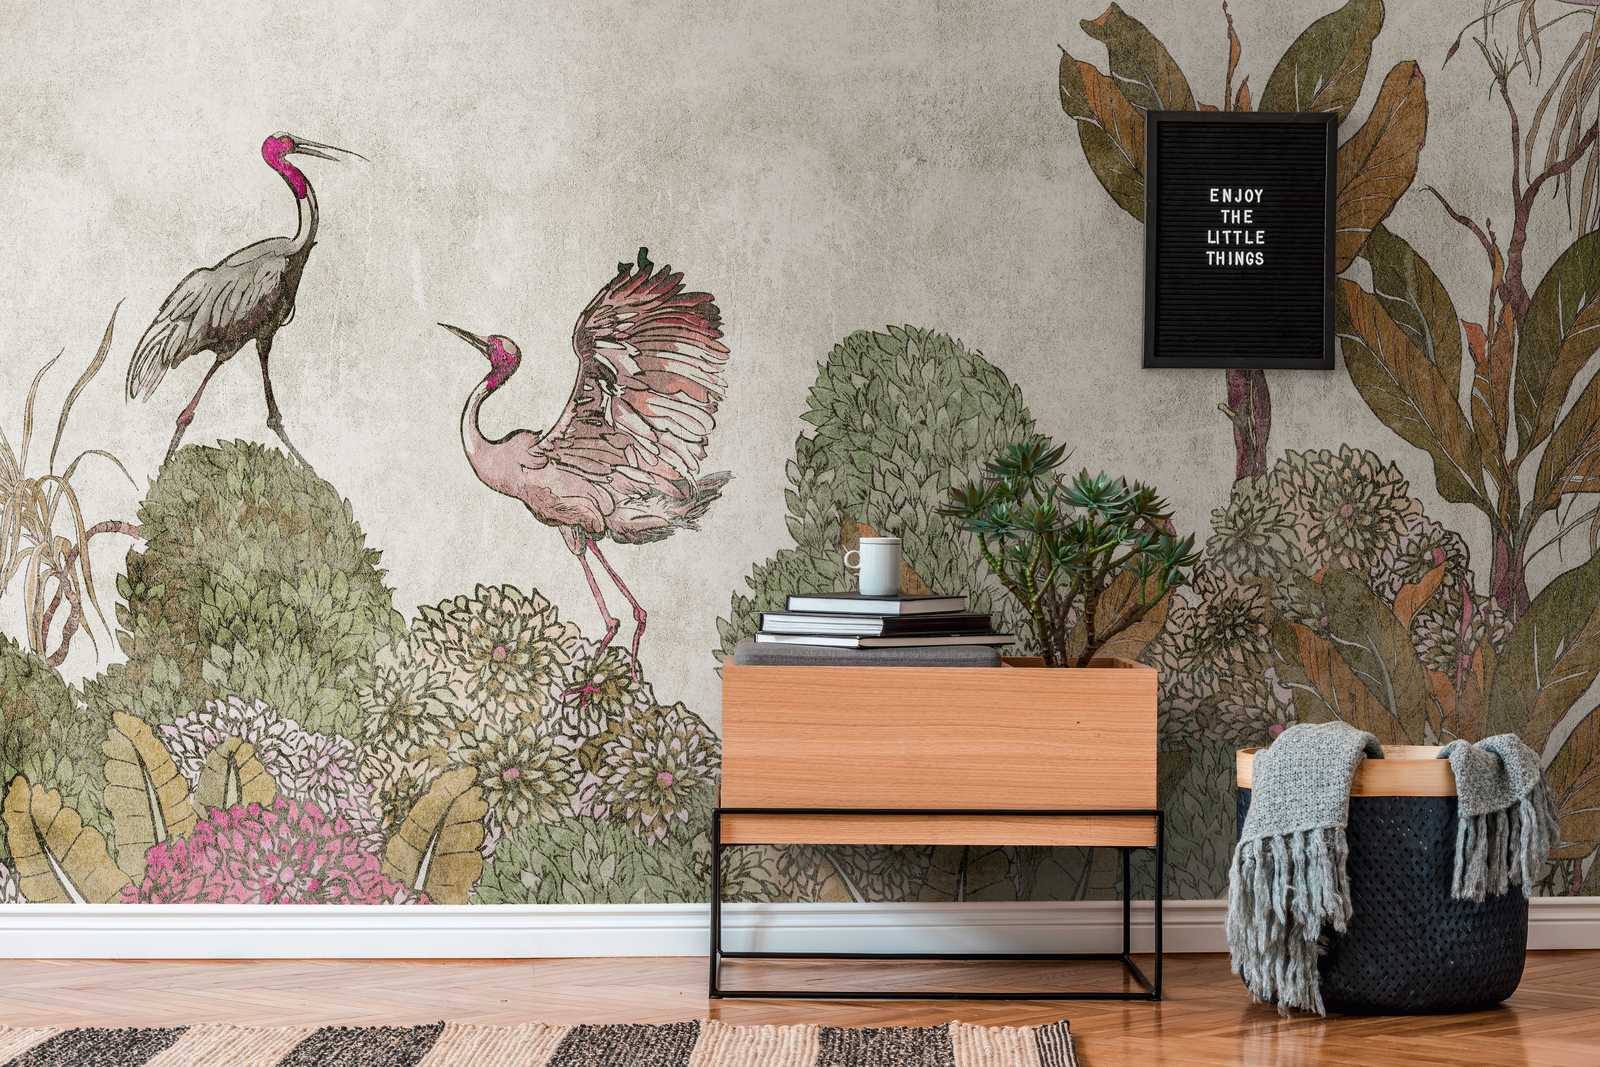             Papier peint Nouveauté | papier peint à motifs plantes tropicales & grues au look usé
        